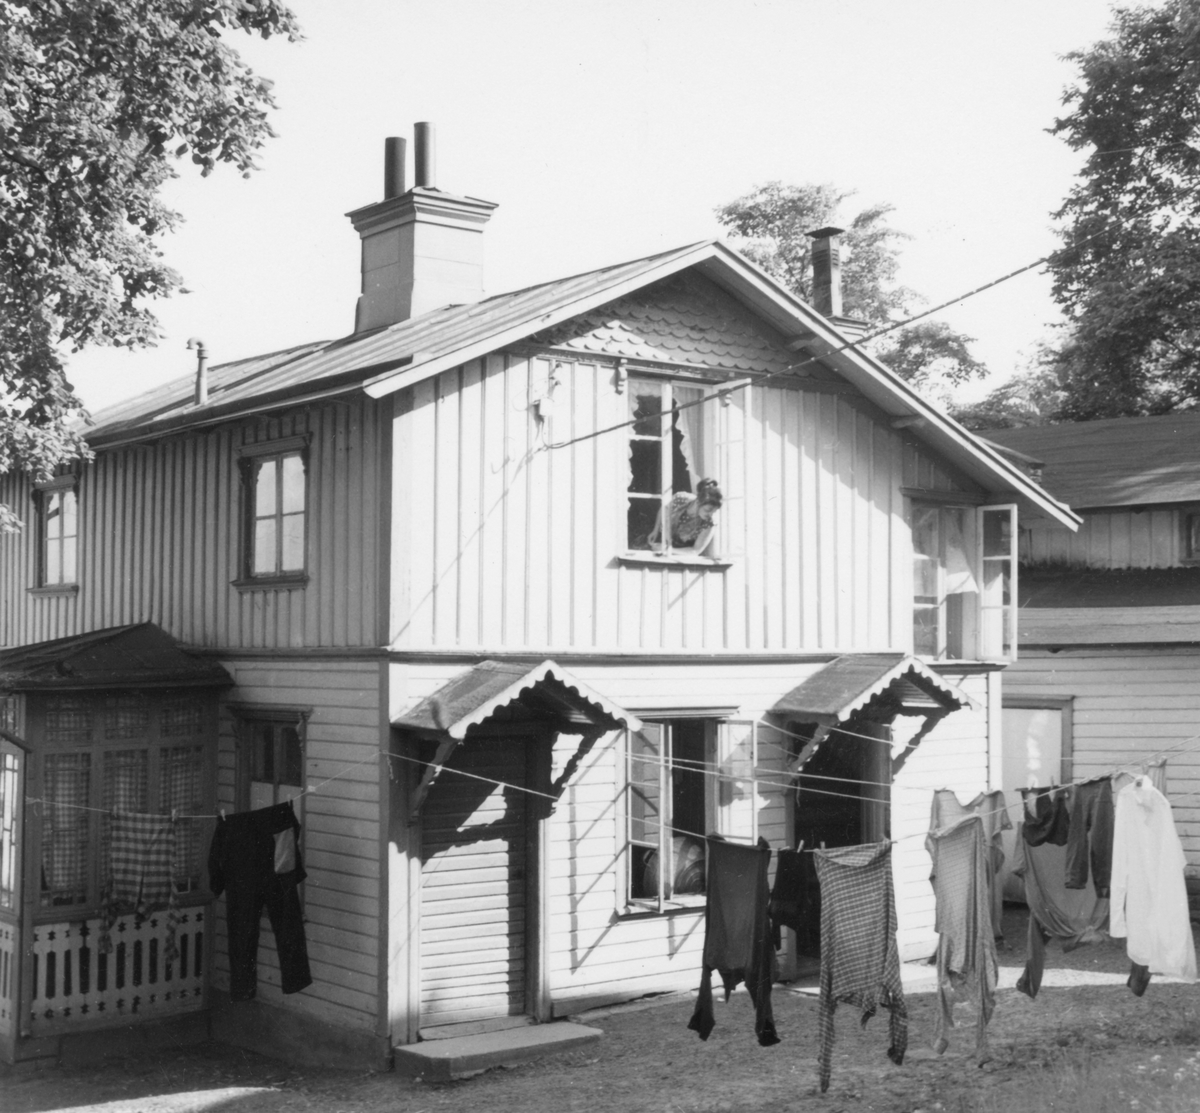 Ett hus med gård i Jönköping. Tvätt hänger på tork och en kvinna tittar ut genom ett fönster på övervåningen.